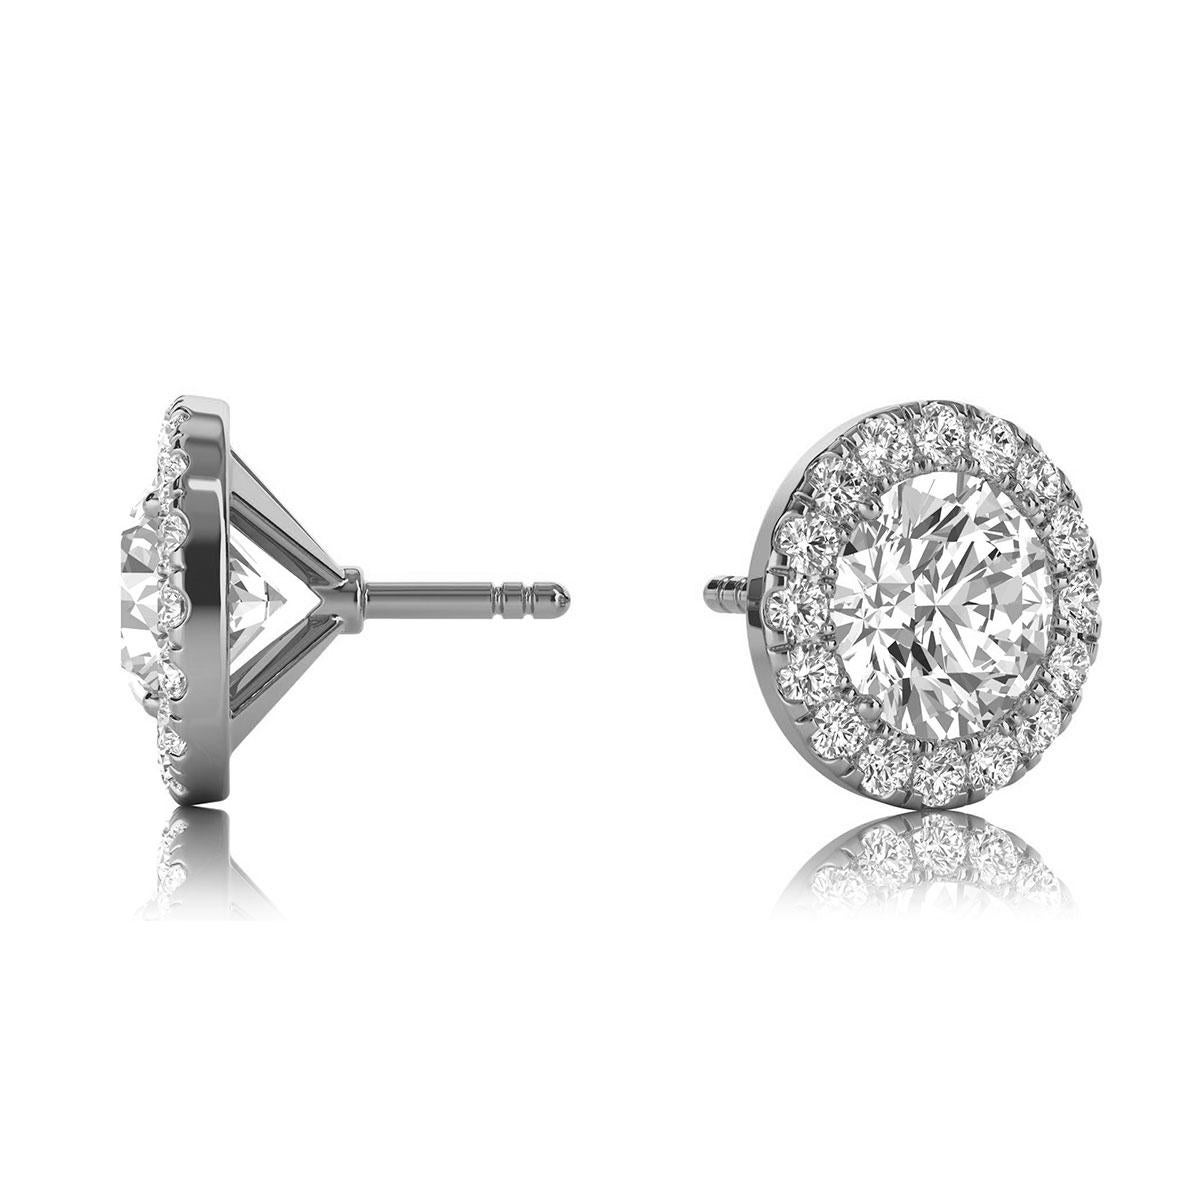 Diese zarten Ohrringe bestehen aus zwei runden Diamanten mit einem Gesamtgewicht von etwa 1,08 Karat (5,2 mm), die von einem Halo aus 32 perfekt aufeinander abgestimmten runden Brillanten mit einem Gesamtgewicht von etwa 0,32 Karat umgeben sind. Die